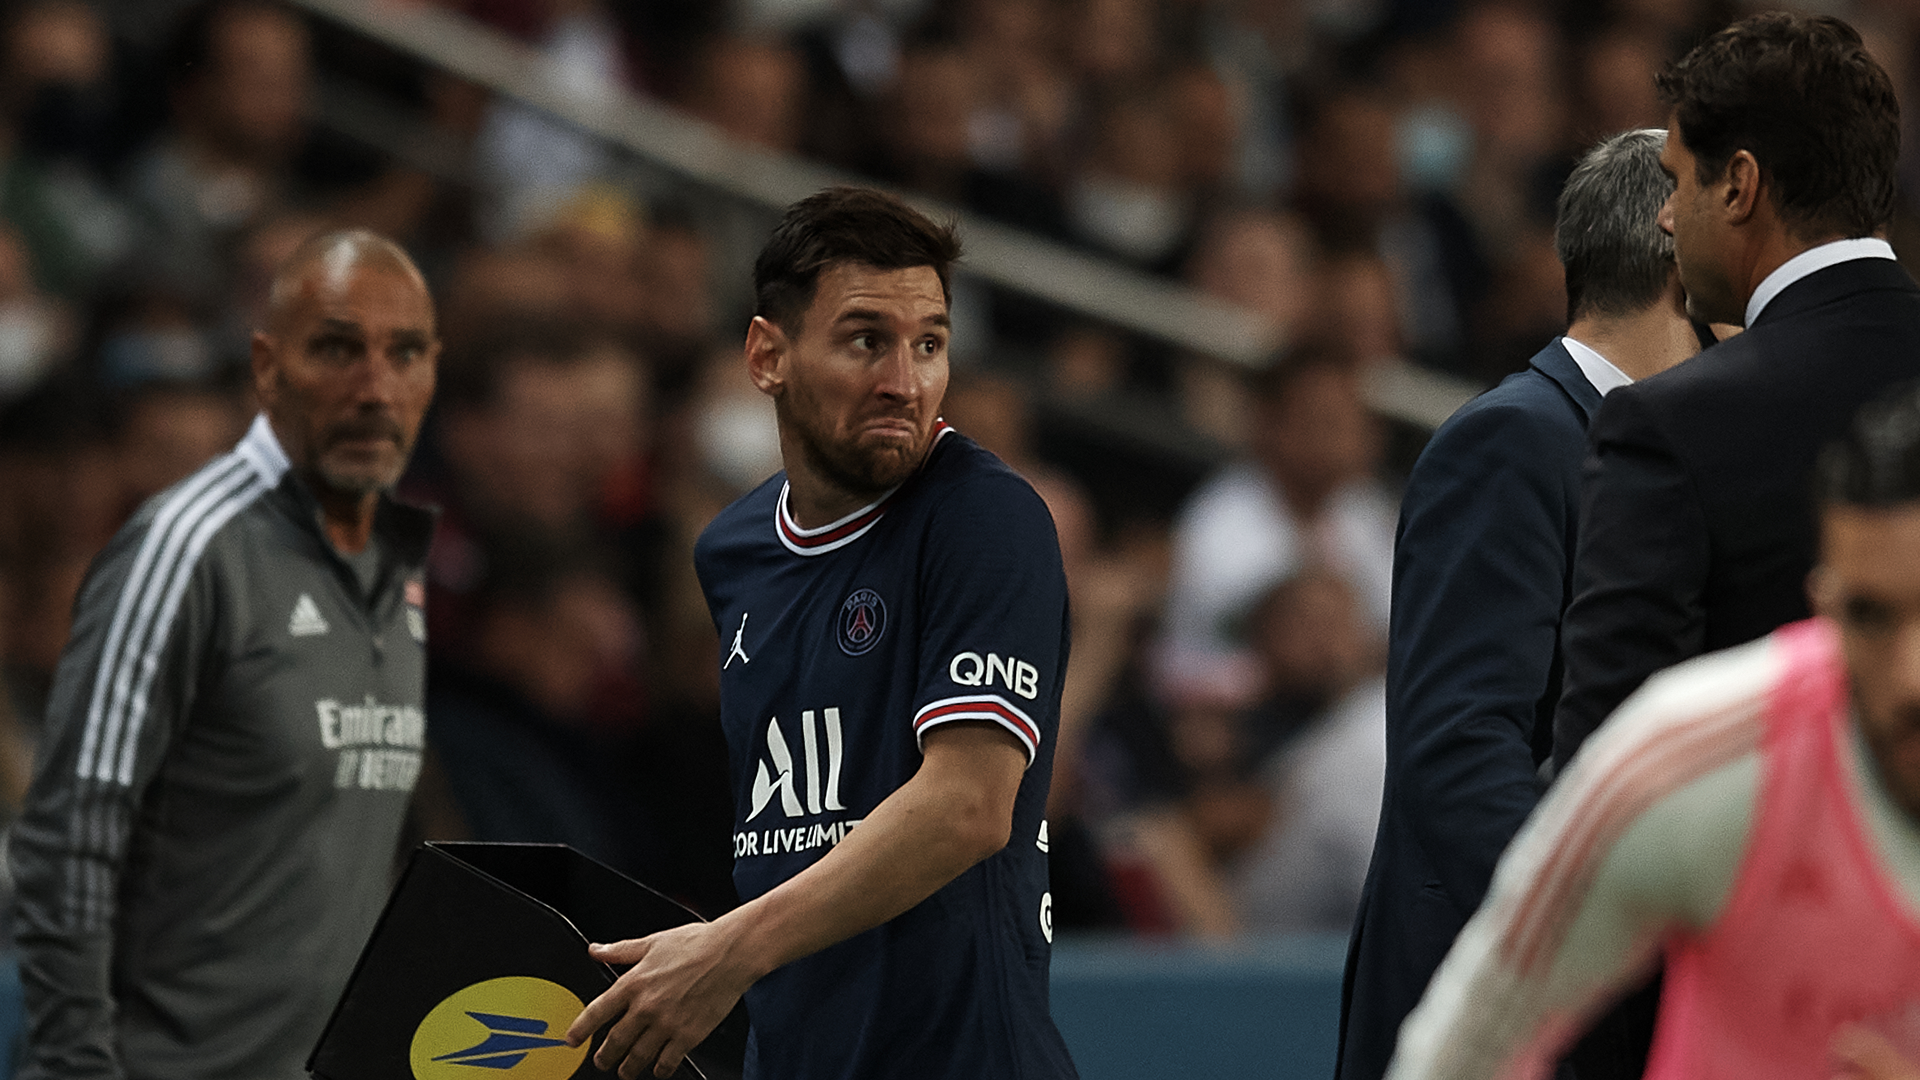 Messi polemico dopo la sostituzione: quando i giocatori non accettano il cambio. Le foto